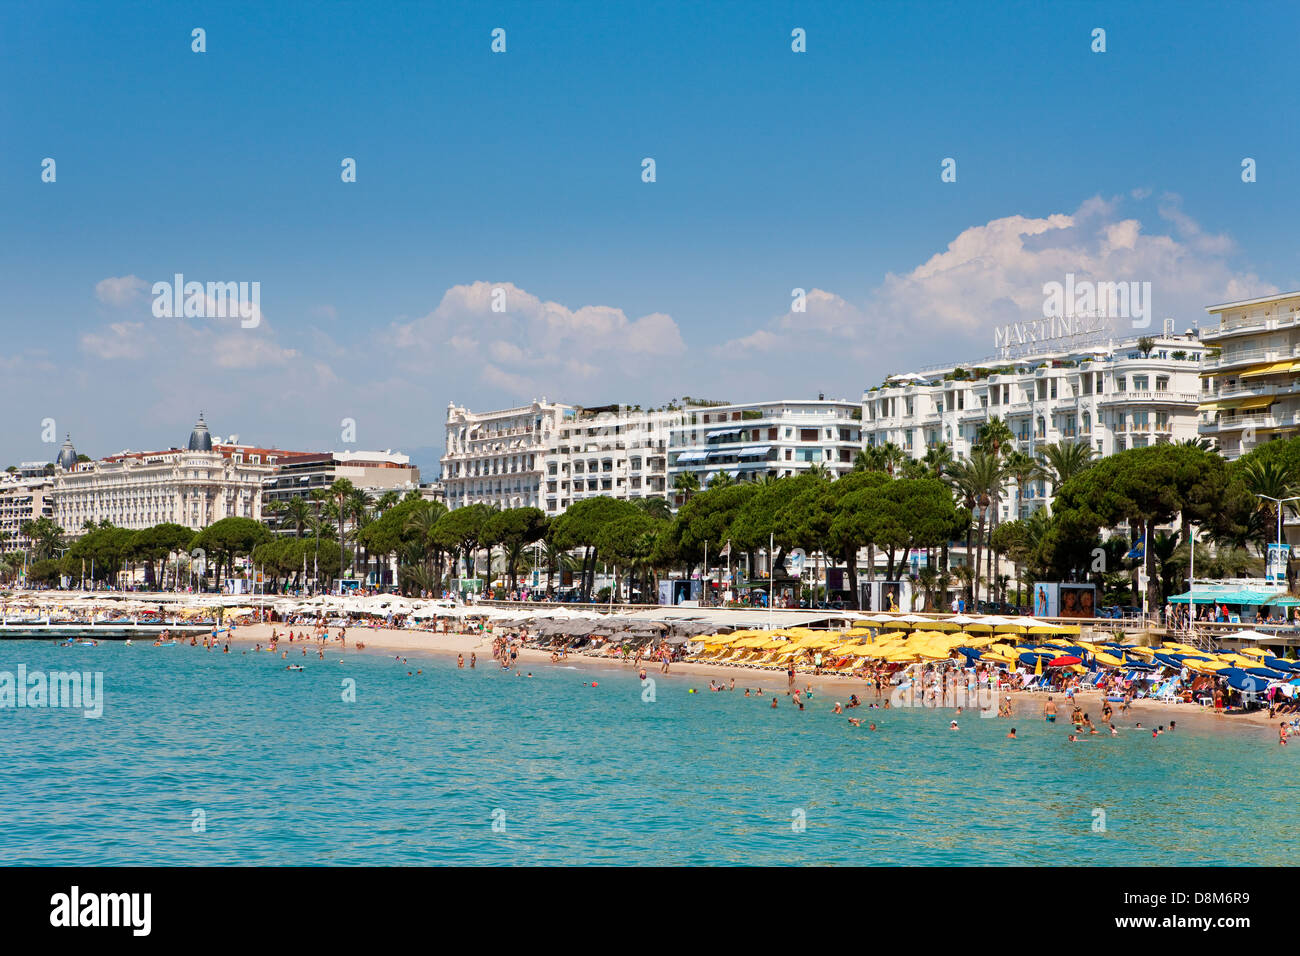 The famous hotel Martinez, Boulevard de la Croisette along the waterfront, Cannes, France Stock Photo